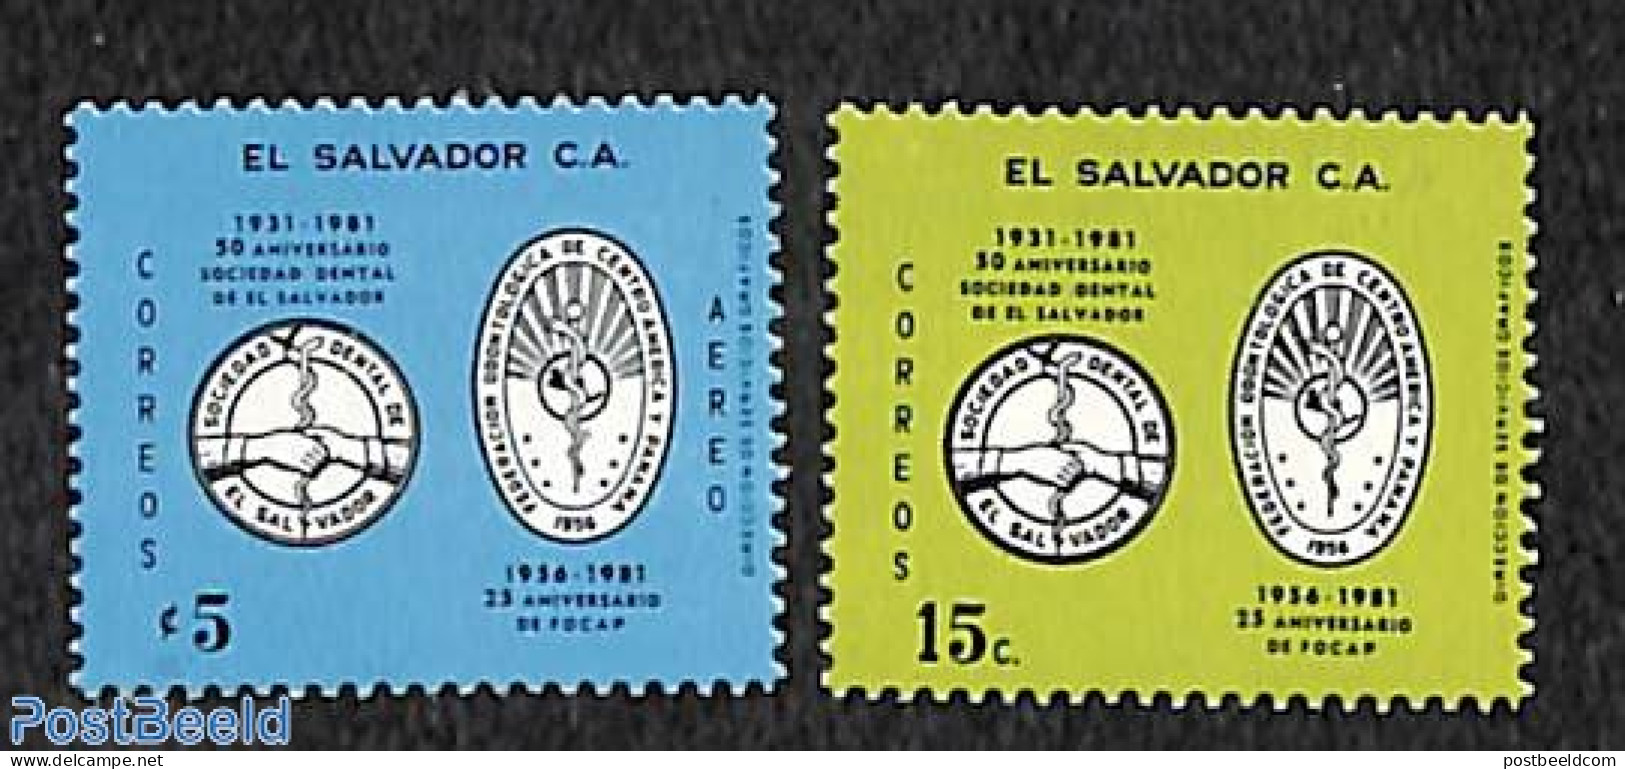 El Salvador 1981 Dentist Association 2v, Mint NH, Health - Nature - Health - Gardens - El Salvador